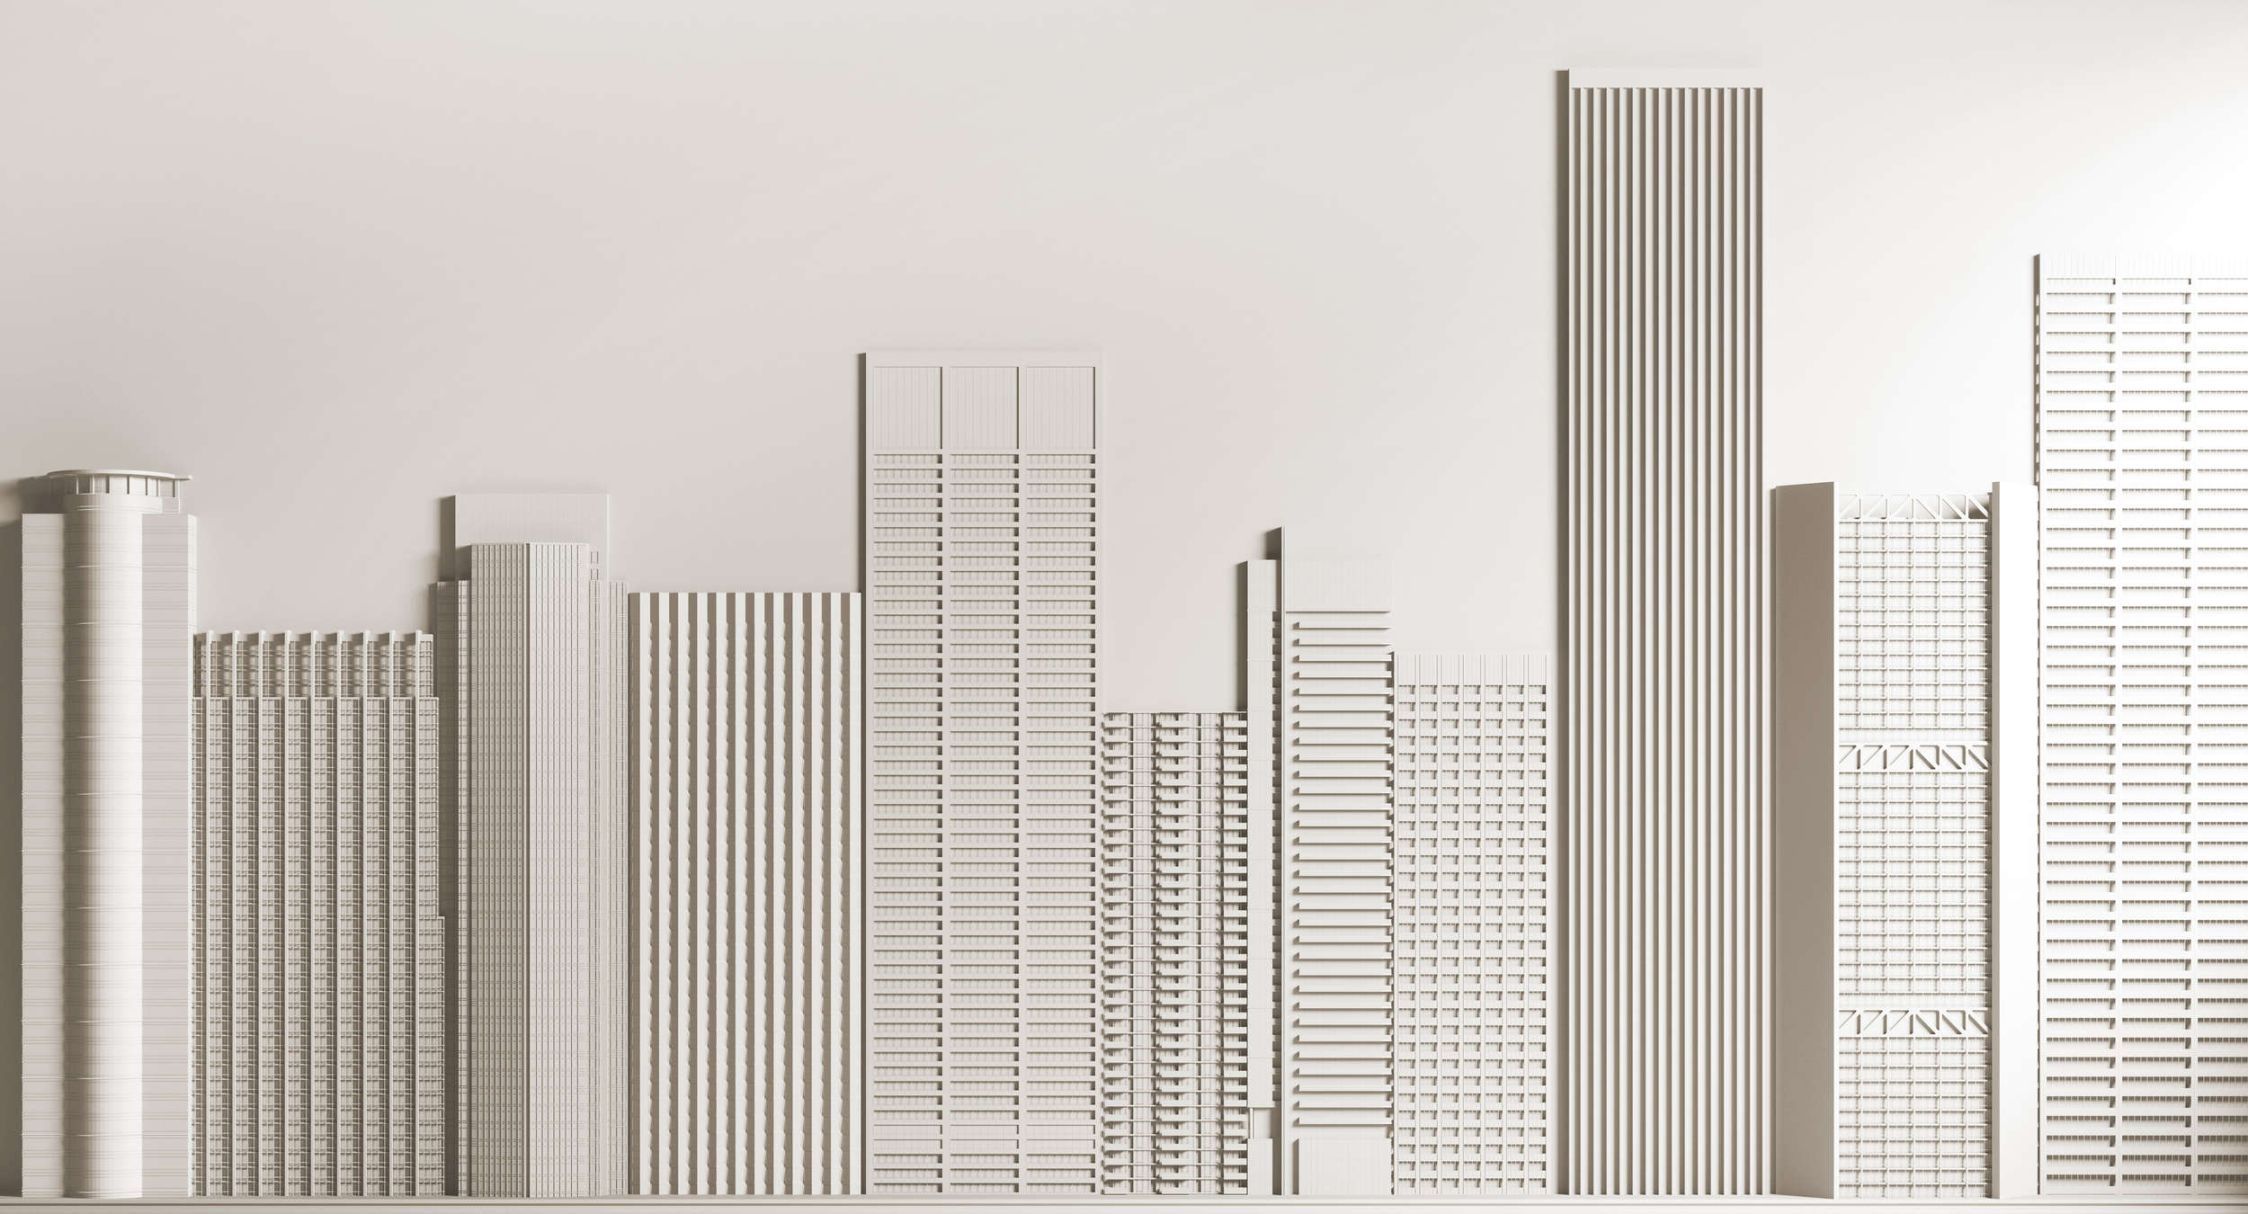             Fotomurali »new skyline« - Architettura con grattacieli - Materiali non tessuto liscio e leggermente perlato
        